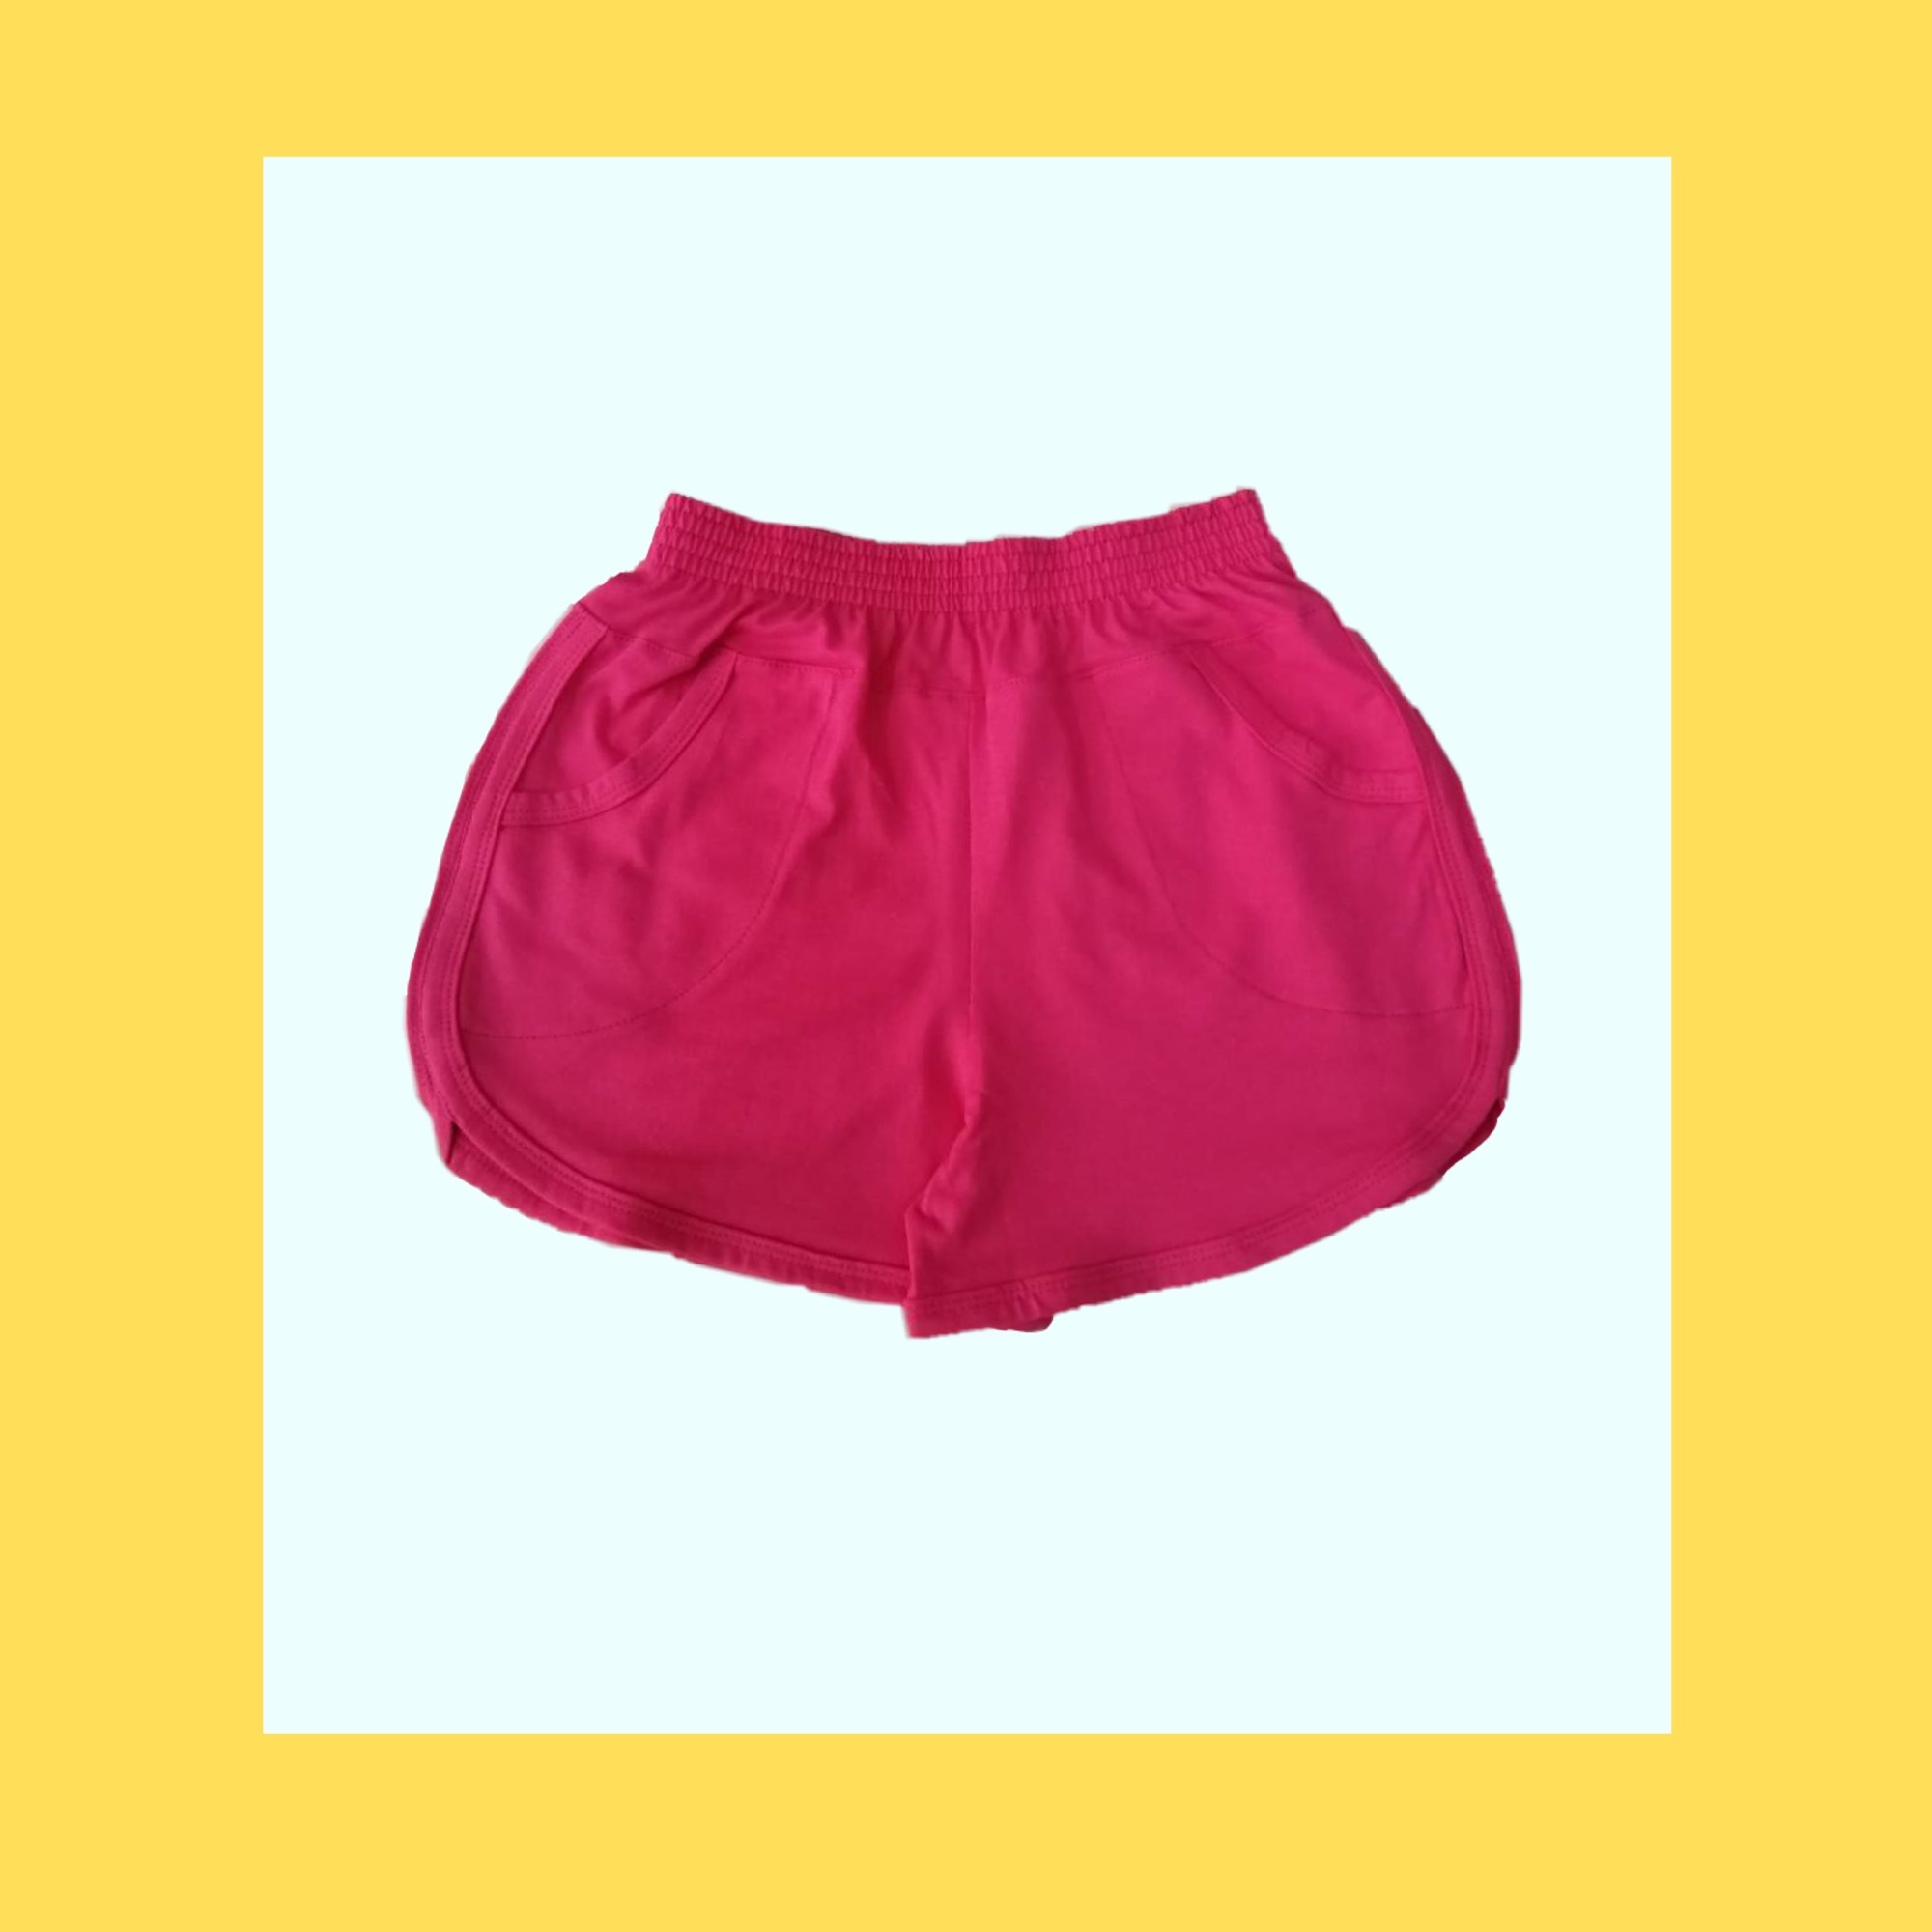 กางเกงขาสั้นผู้หญิง ผ้ายืด cotton เอวยางยืด ไซส์ S,L,2XL เอวตั้งแต่ 24”-42” สะโพก 36”-44” "กุ๊นข้างสีตัวกระเป๋า" by Yuishoponline